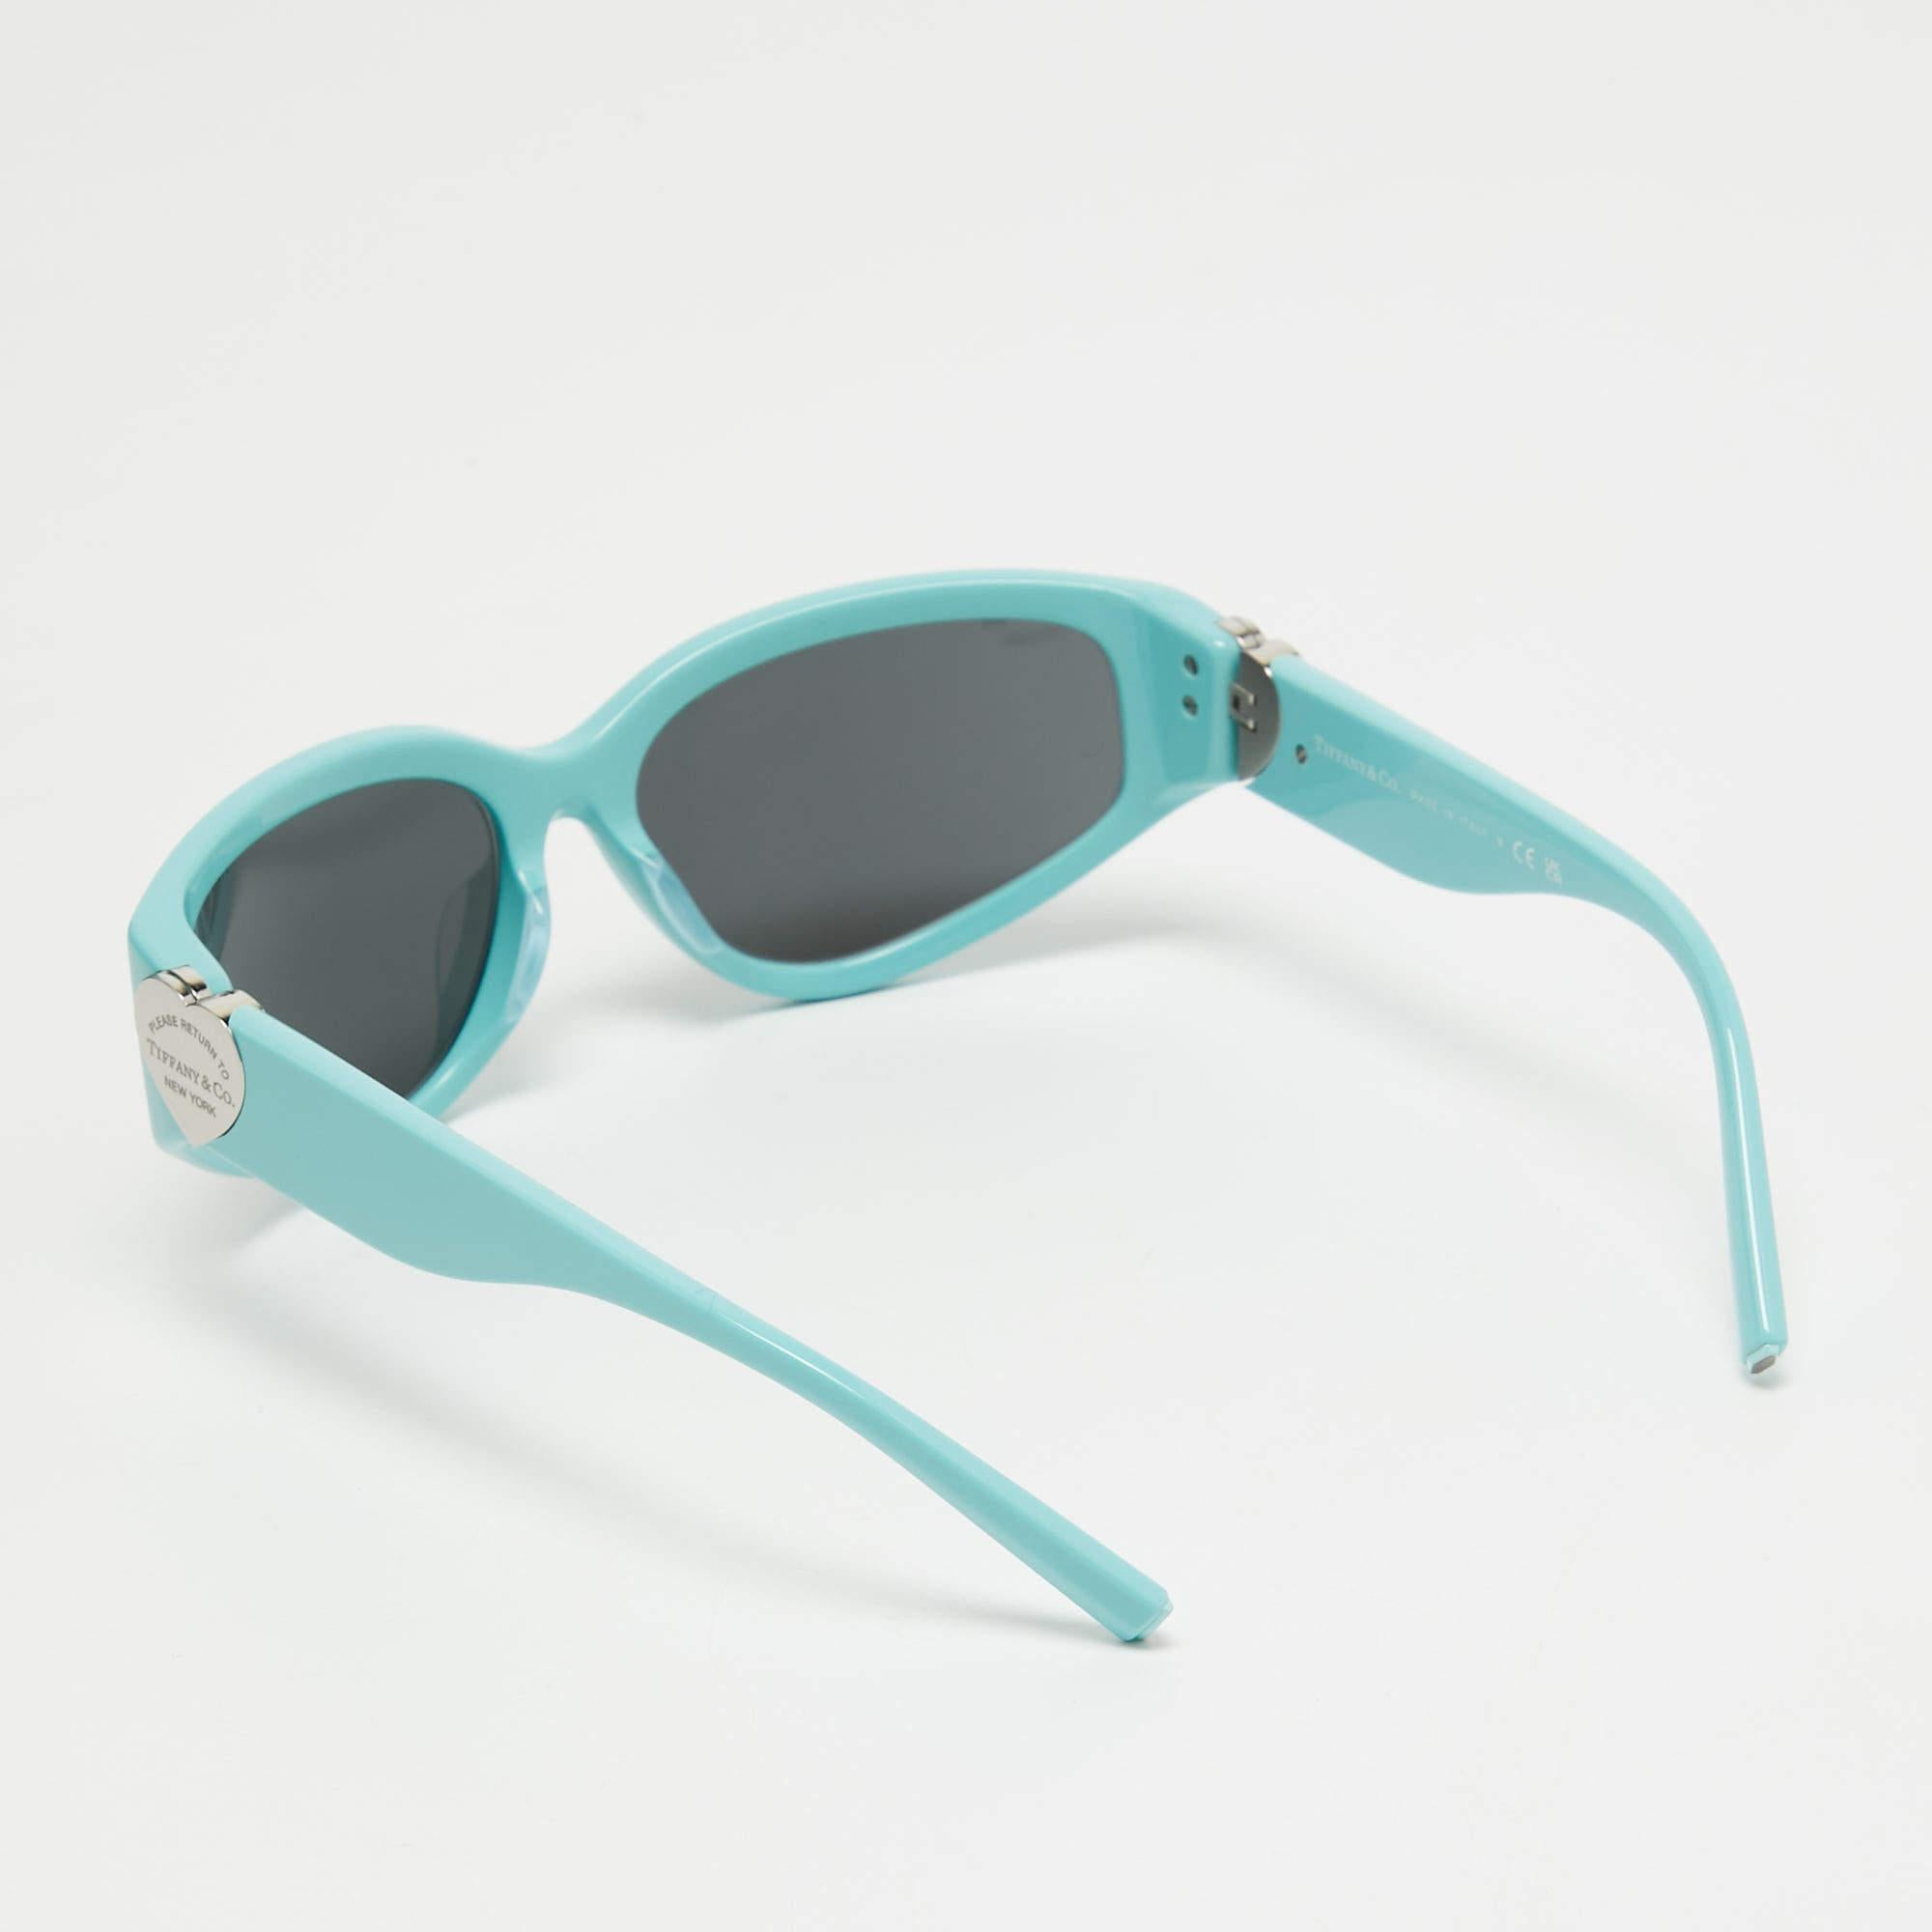 Une paire de lunettes de soleil de Tiffany & Co. fera certainement l'objet d'un achat de prestige. Dotées d'une monture tendance et de verres destinés à protéger vos yeux, ces lunettes de soleil sont idéales pour être portées toute la journée.

